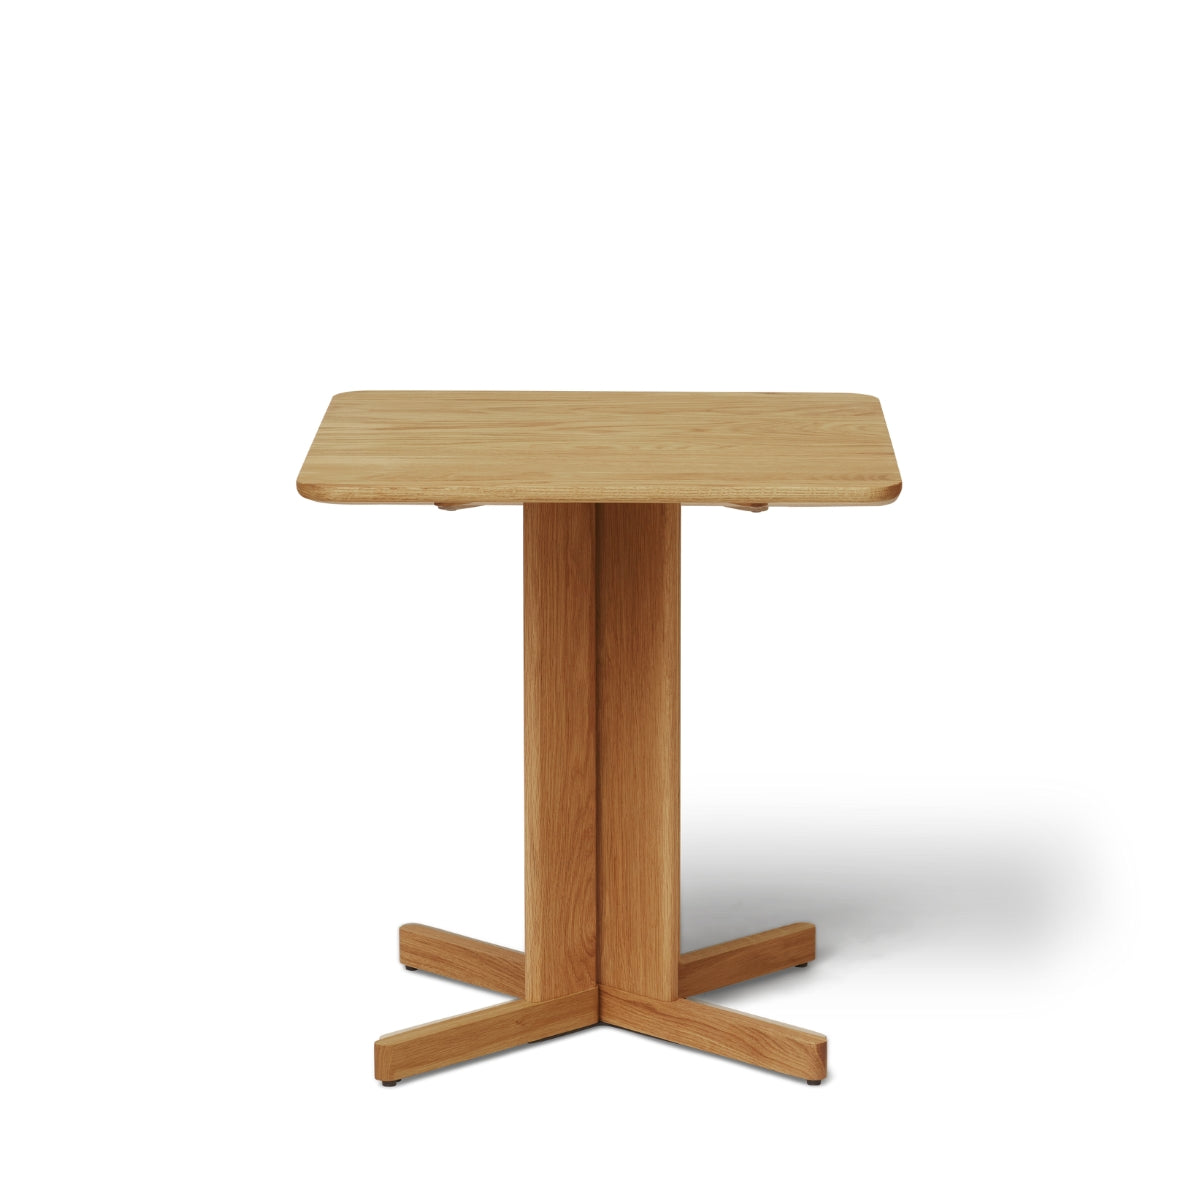 Form & Refine | Quatrefoil Table 68×68 cm